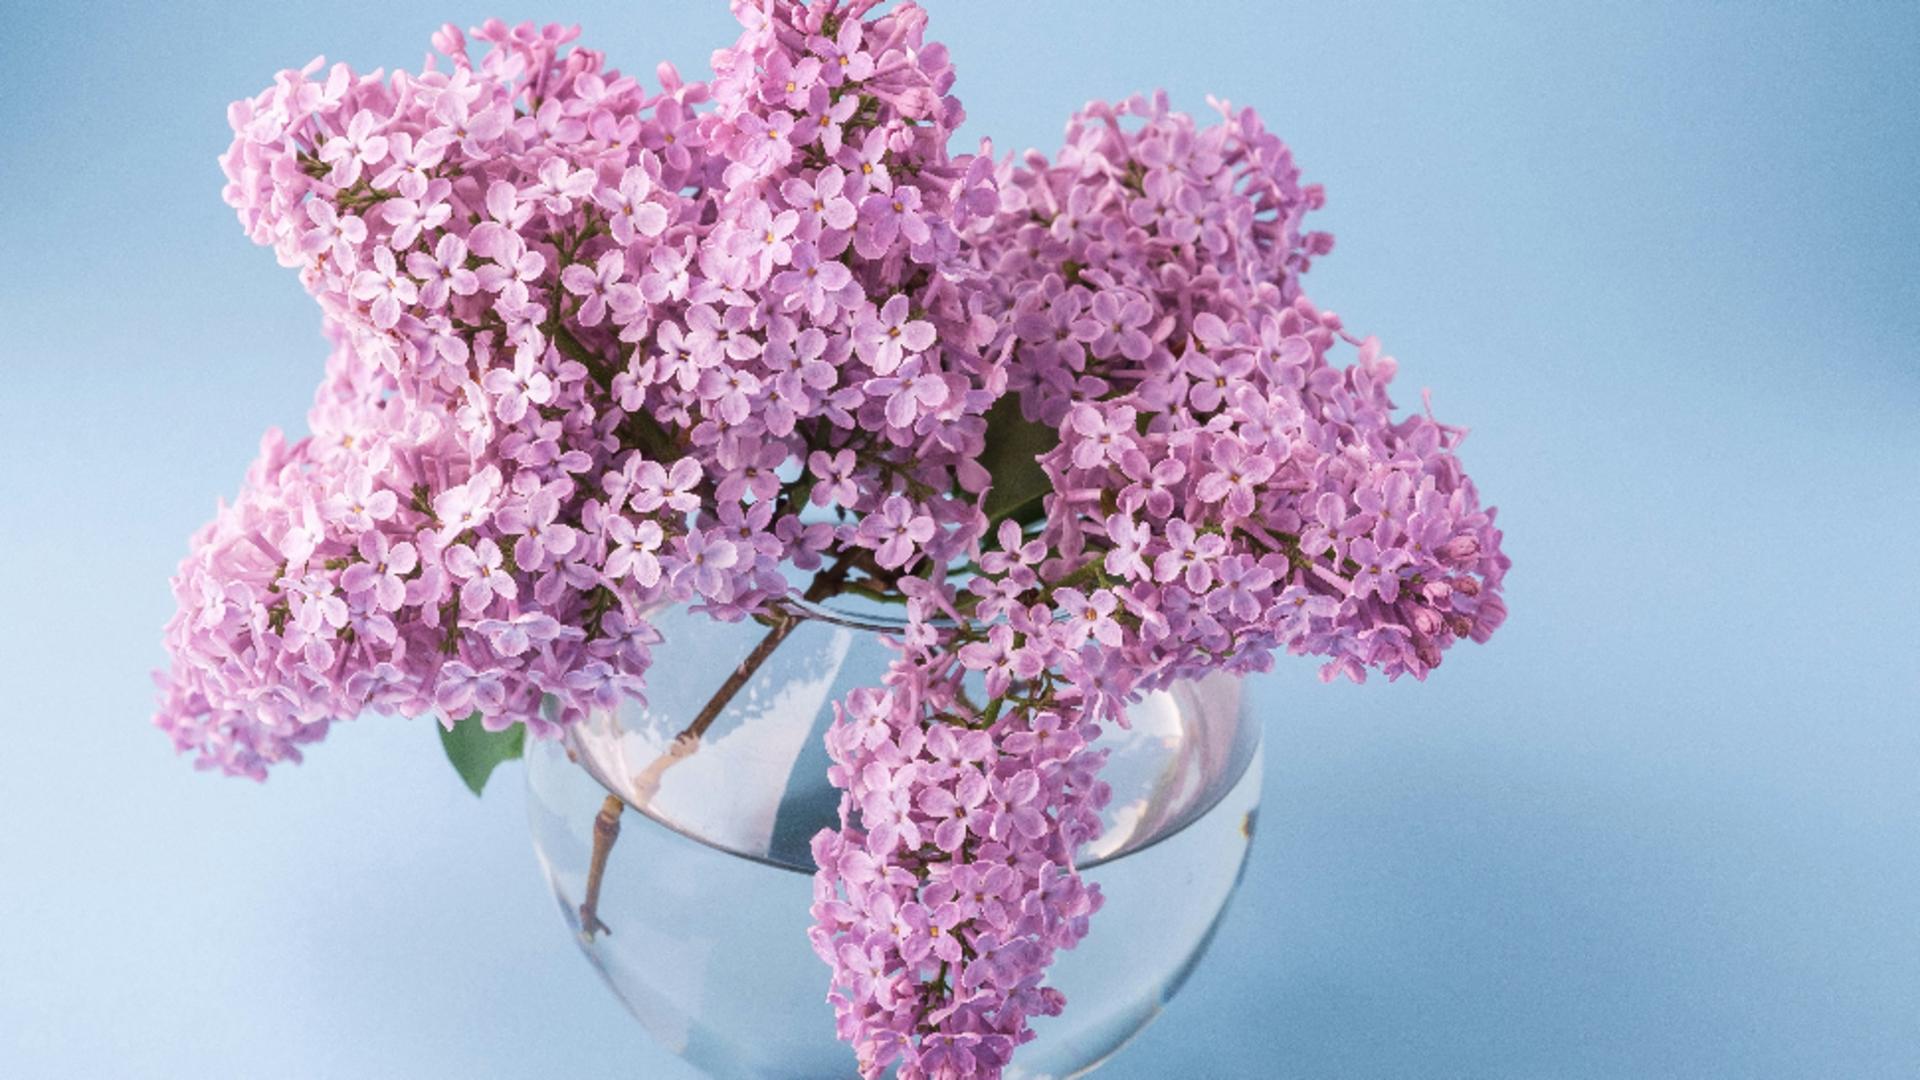 Leacuri cu flori şi frunze de liliac: 4 probleme de sănătate extrem de supărătoare, ce pot fi ameliorarte. Cu siguranță nu știai despre ele!